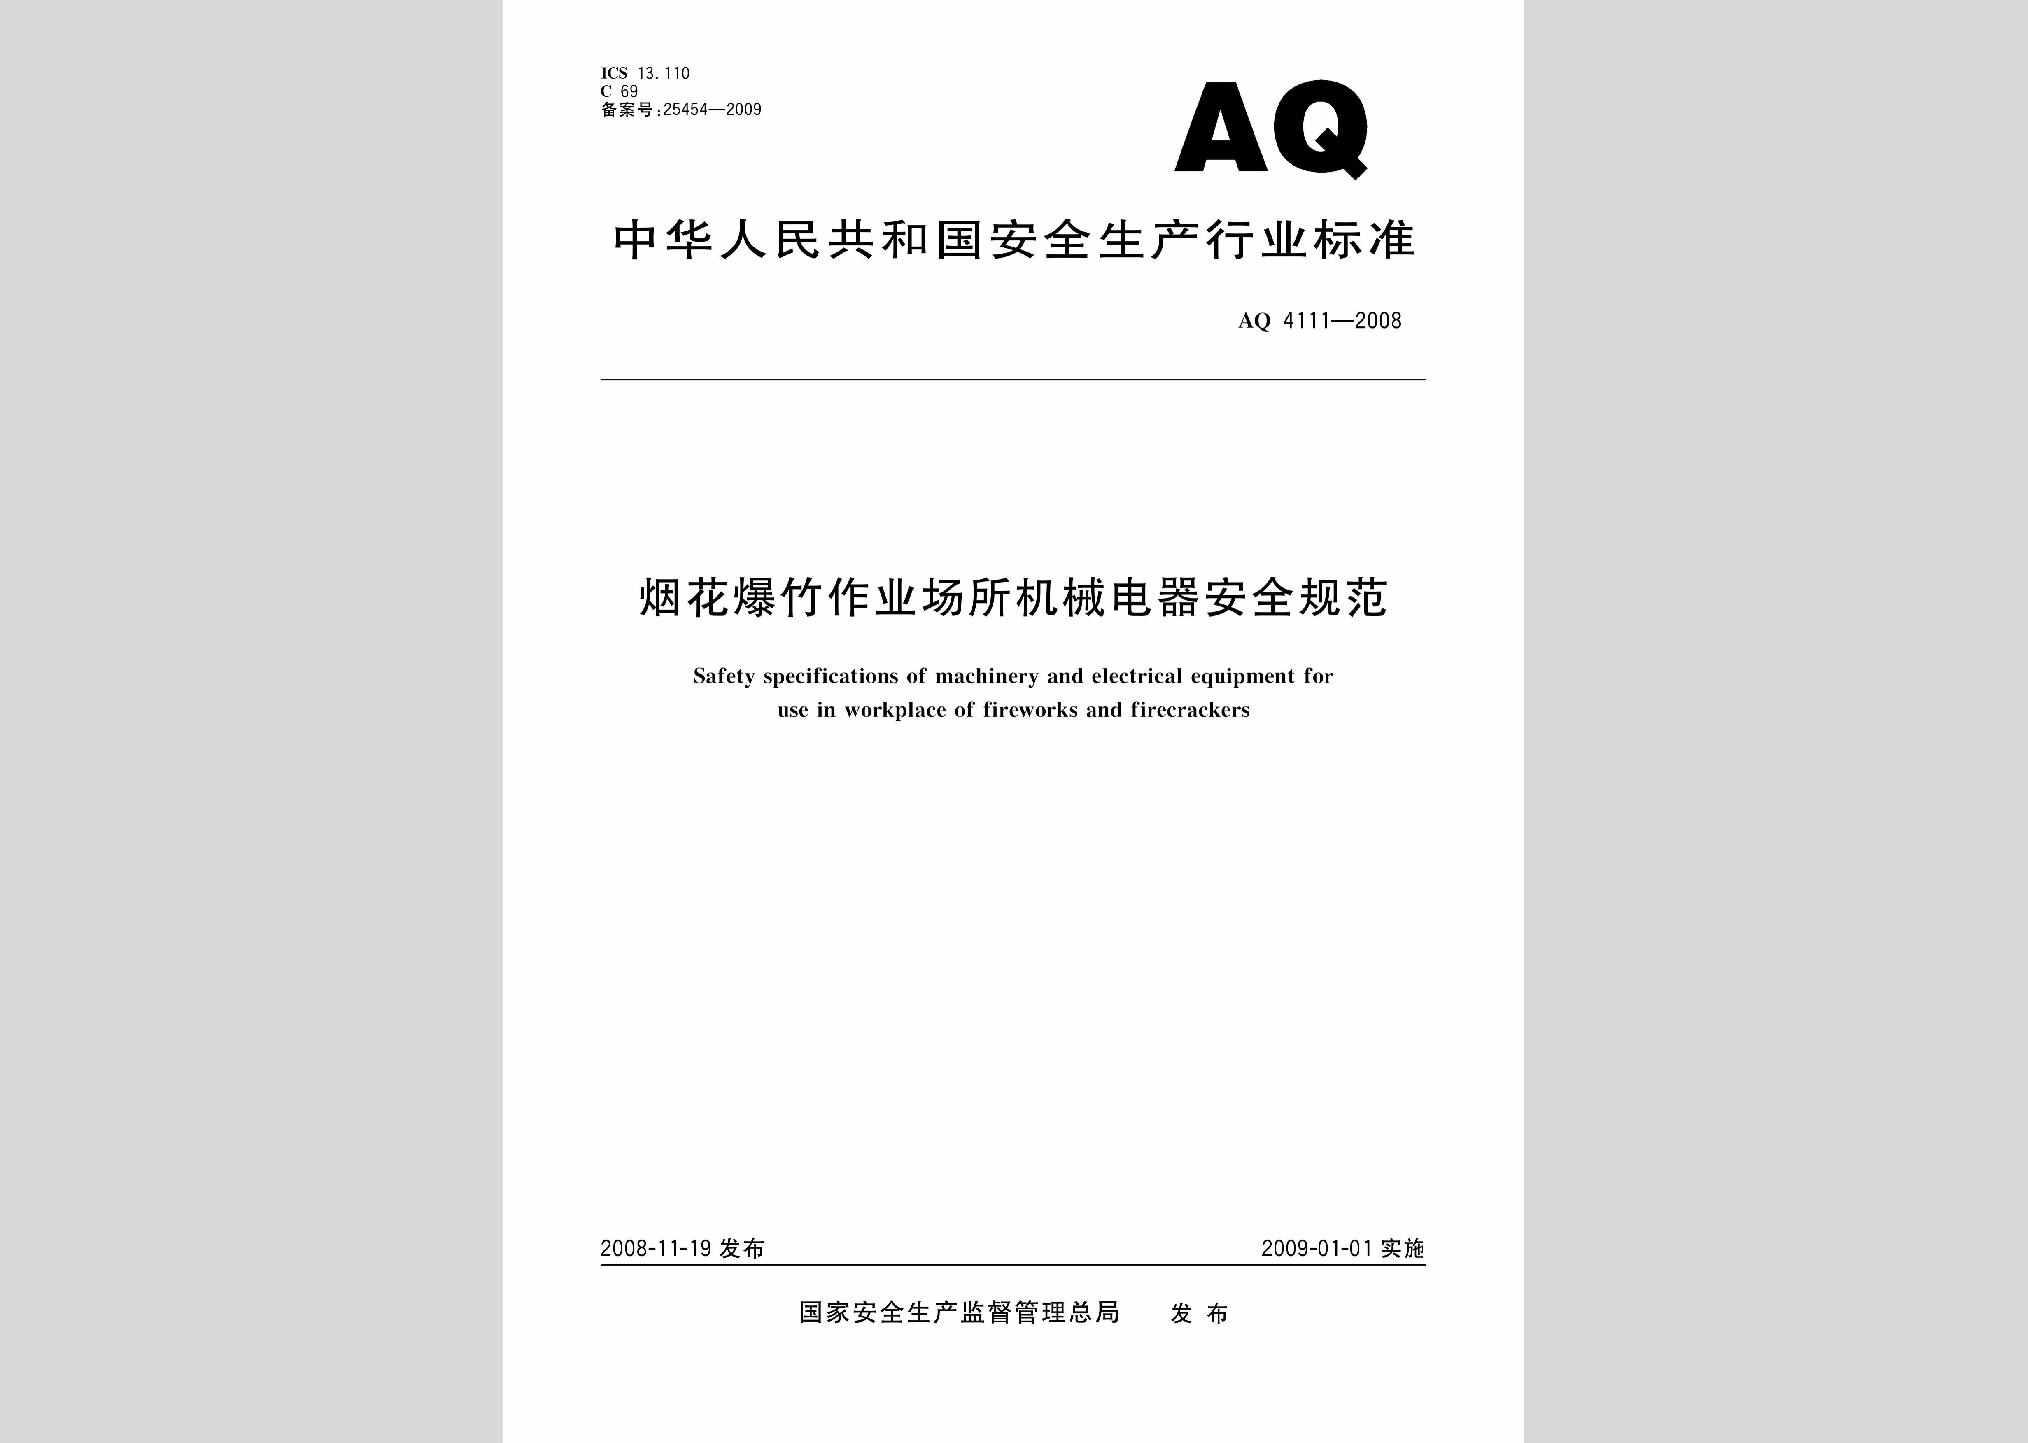 AQ4111-2008：烟花爆竹作业场所机械电器安全规范